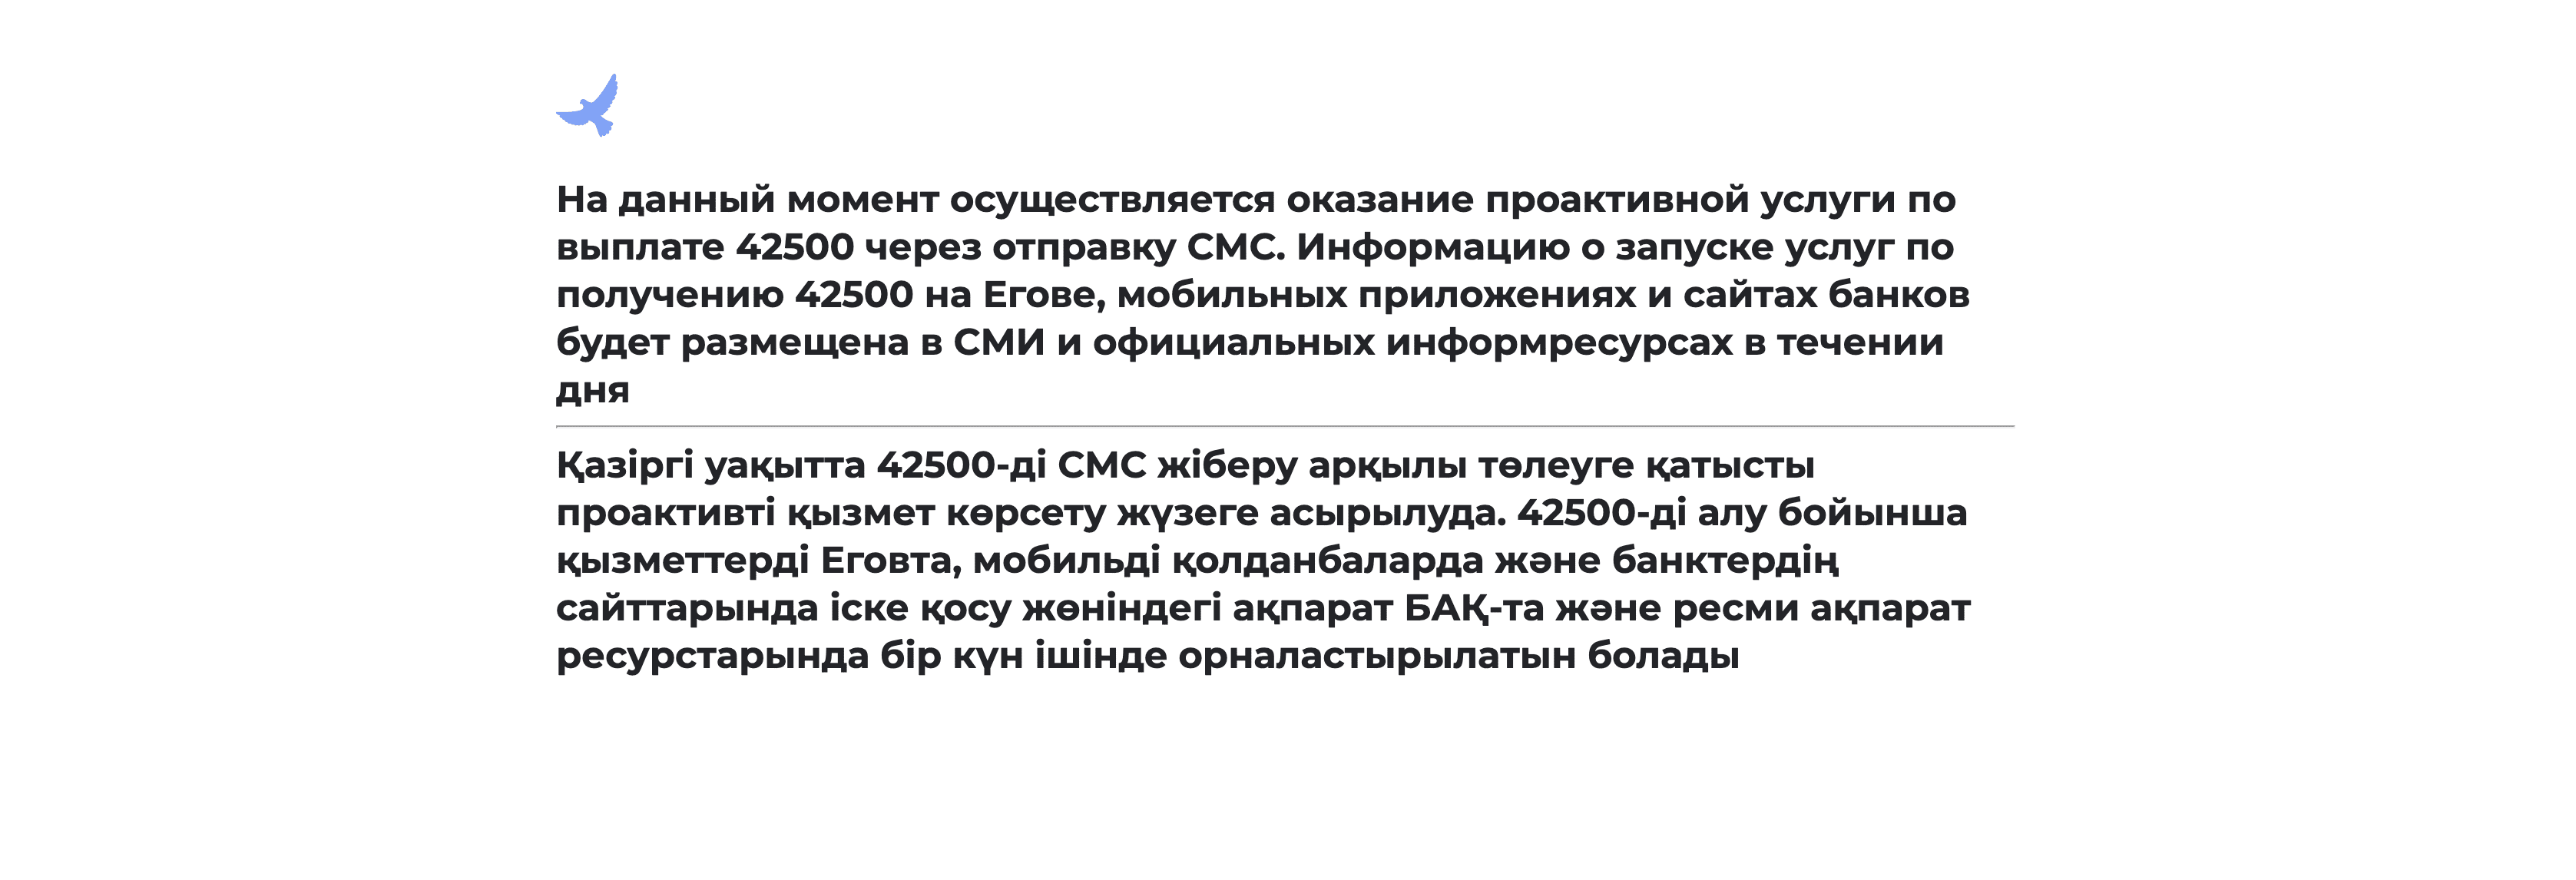 Сообщение сайта 42500.enbek.kz о том что сервис приема заявок еще не запущен